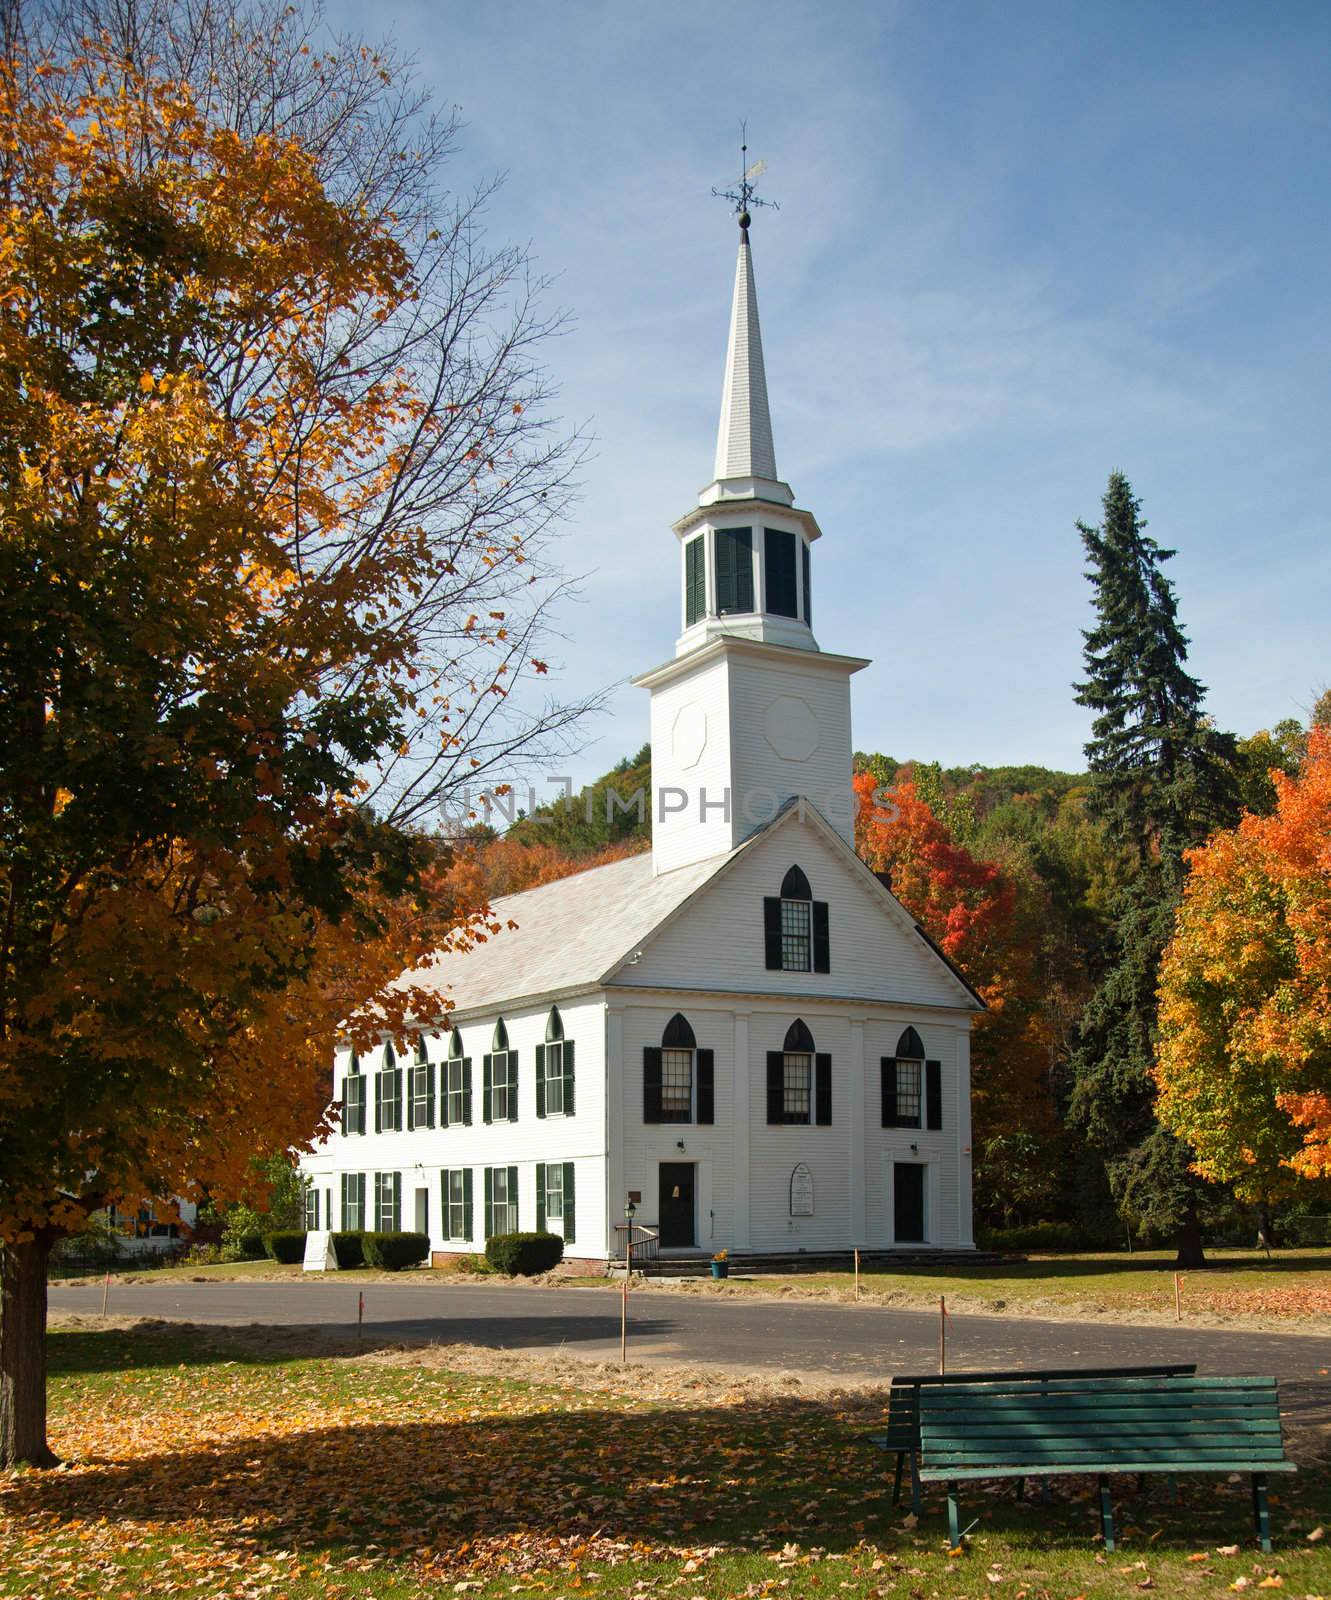 Townshend Church in Fall by steheap